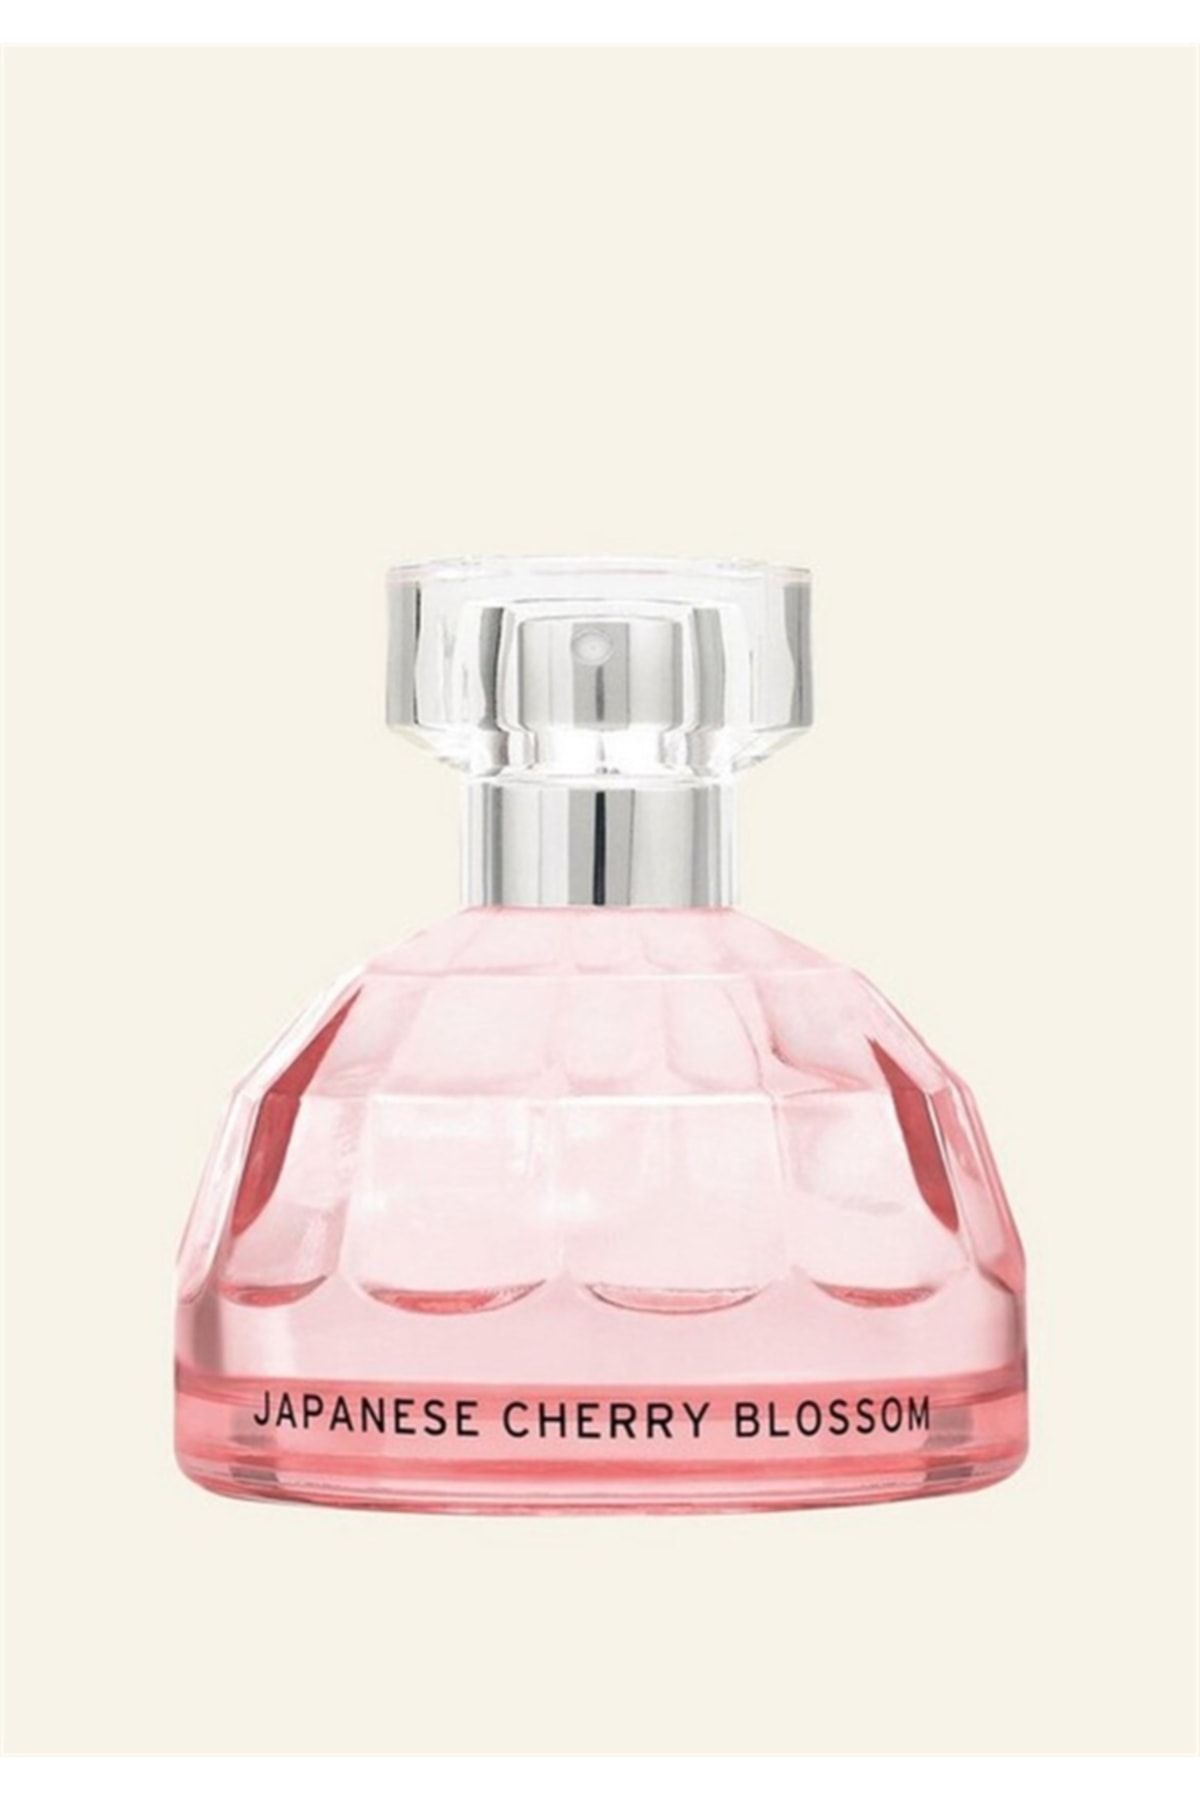 THE BODY SHOP Japanese Cherry Blossom Eau De Toilette